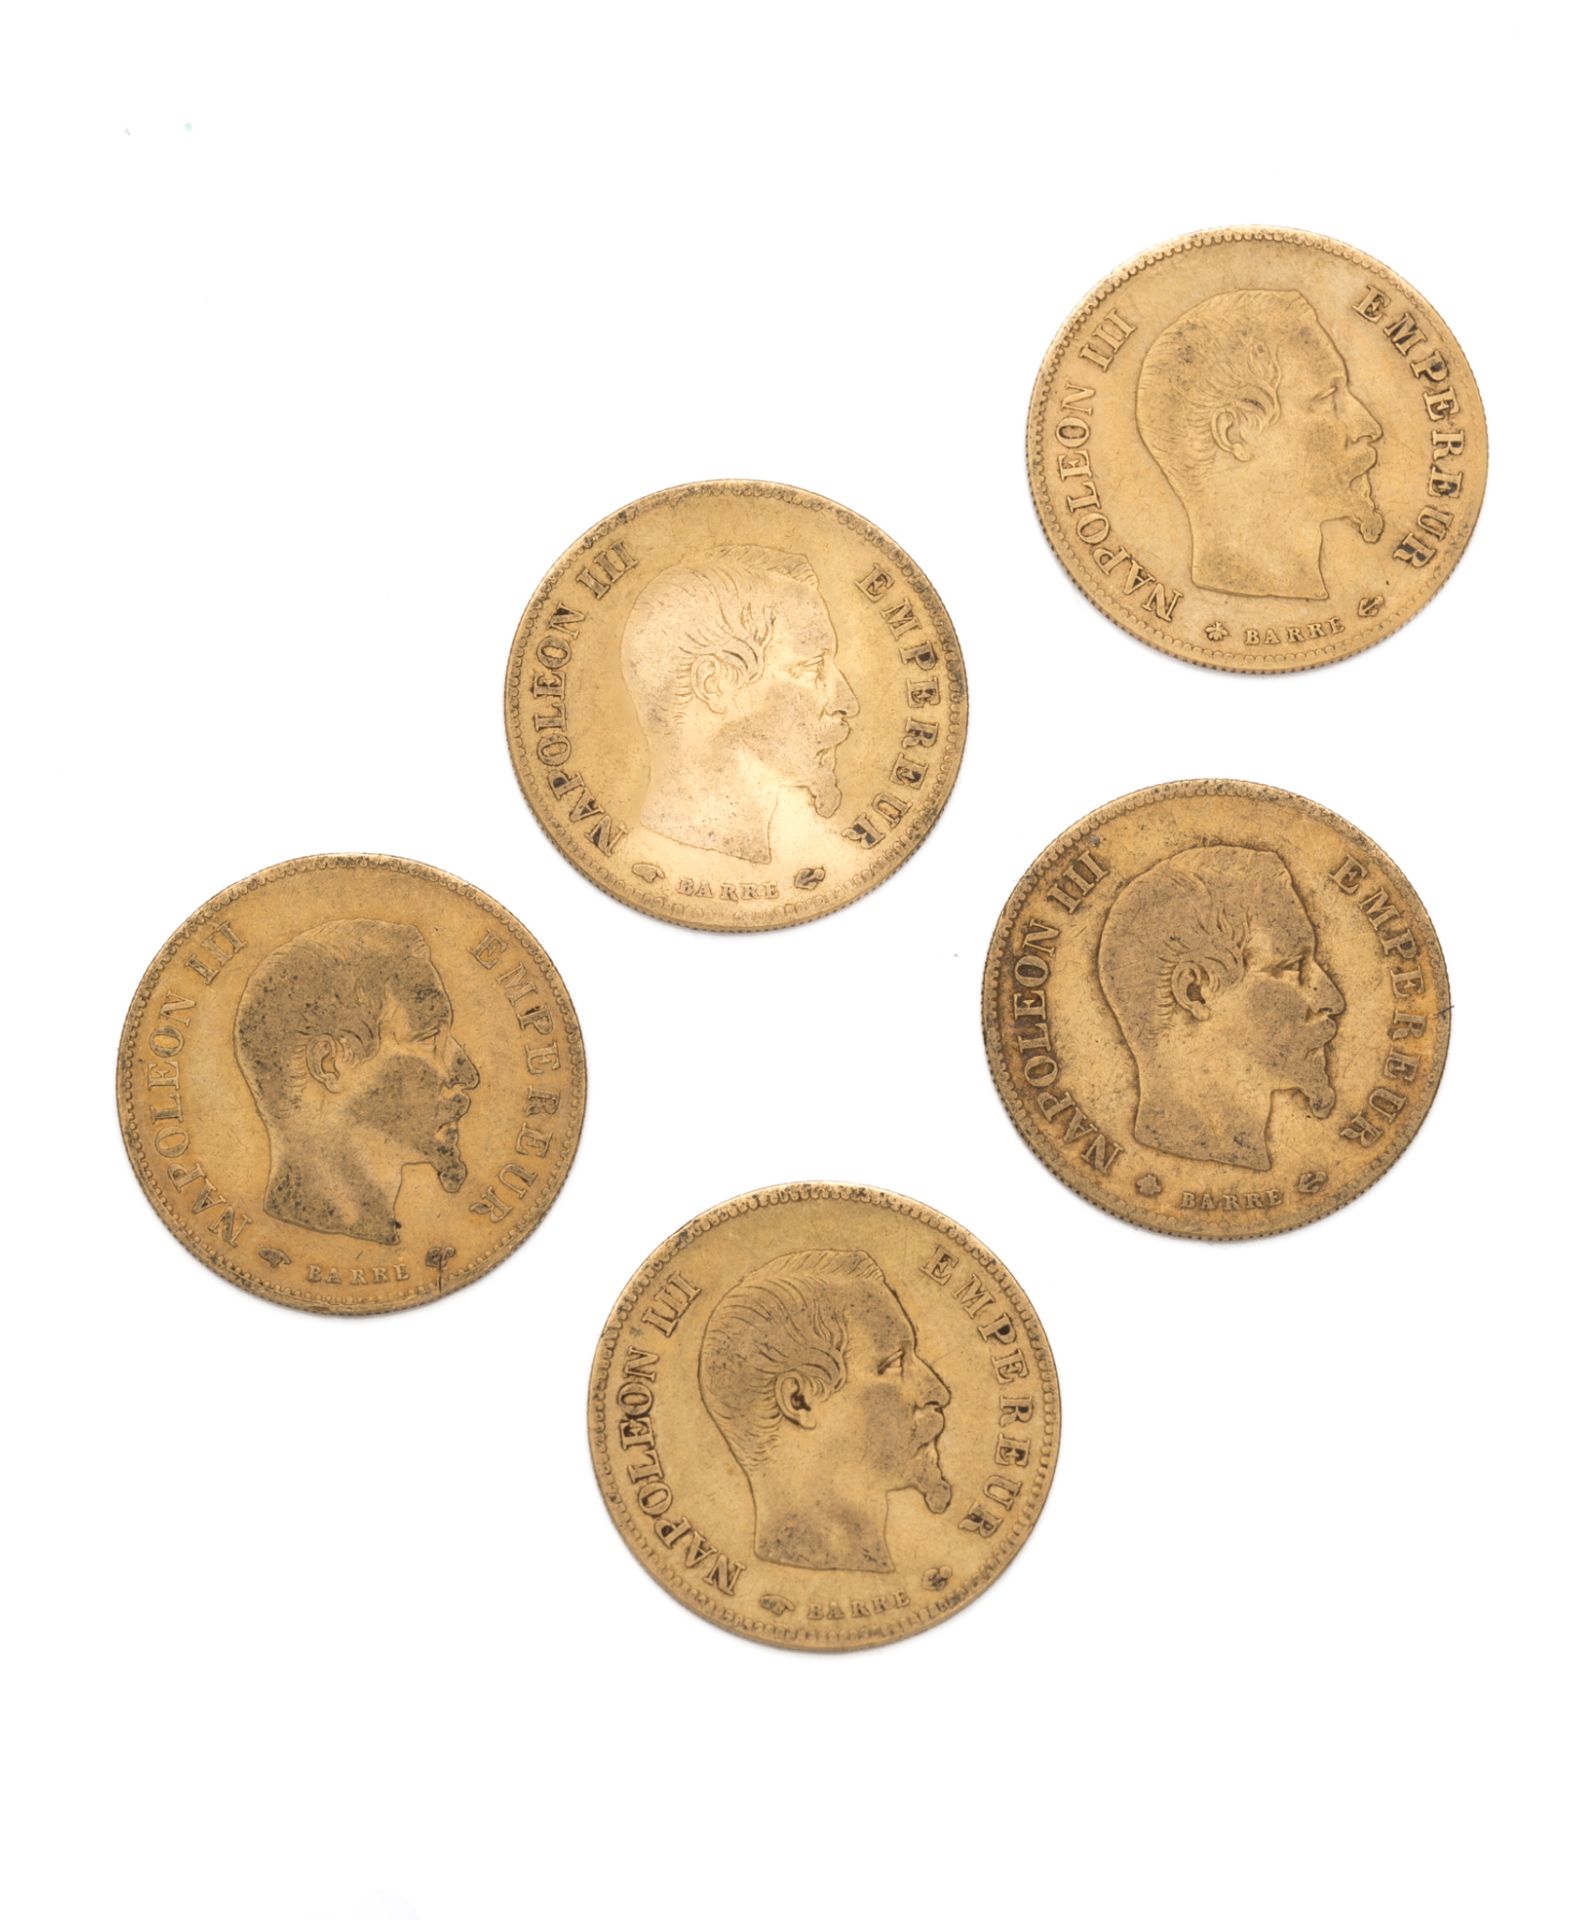 Null 第二帝国
10法郎黄金，拿破仑三世光头。 1856年A - 1857年A - 1858年A - 1860年BB和A
重量：15.87克